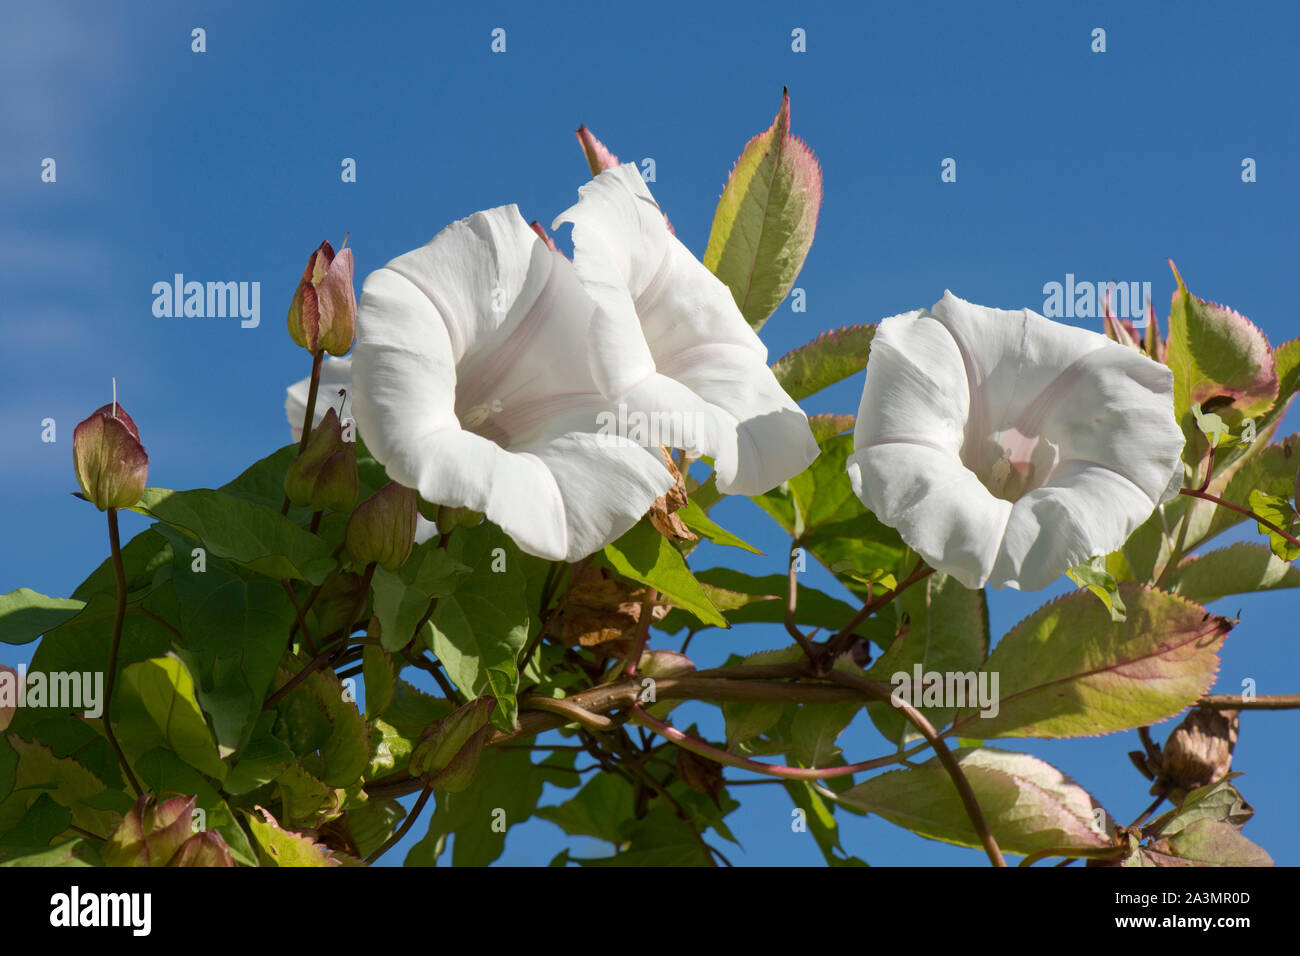 Hedge bindweed oder Oma - Pop-out-of-bed (Calystegia sepium), weiße Blüten, Blätter und Kelch dieser Garten Unkraut, September Stockfoto